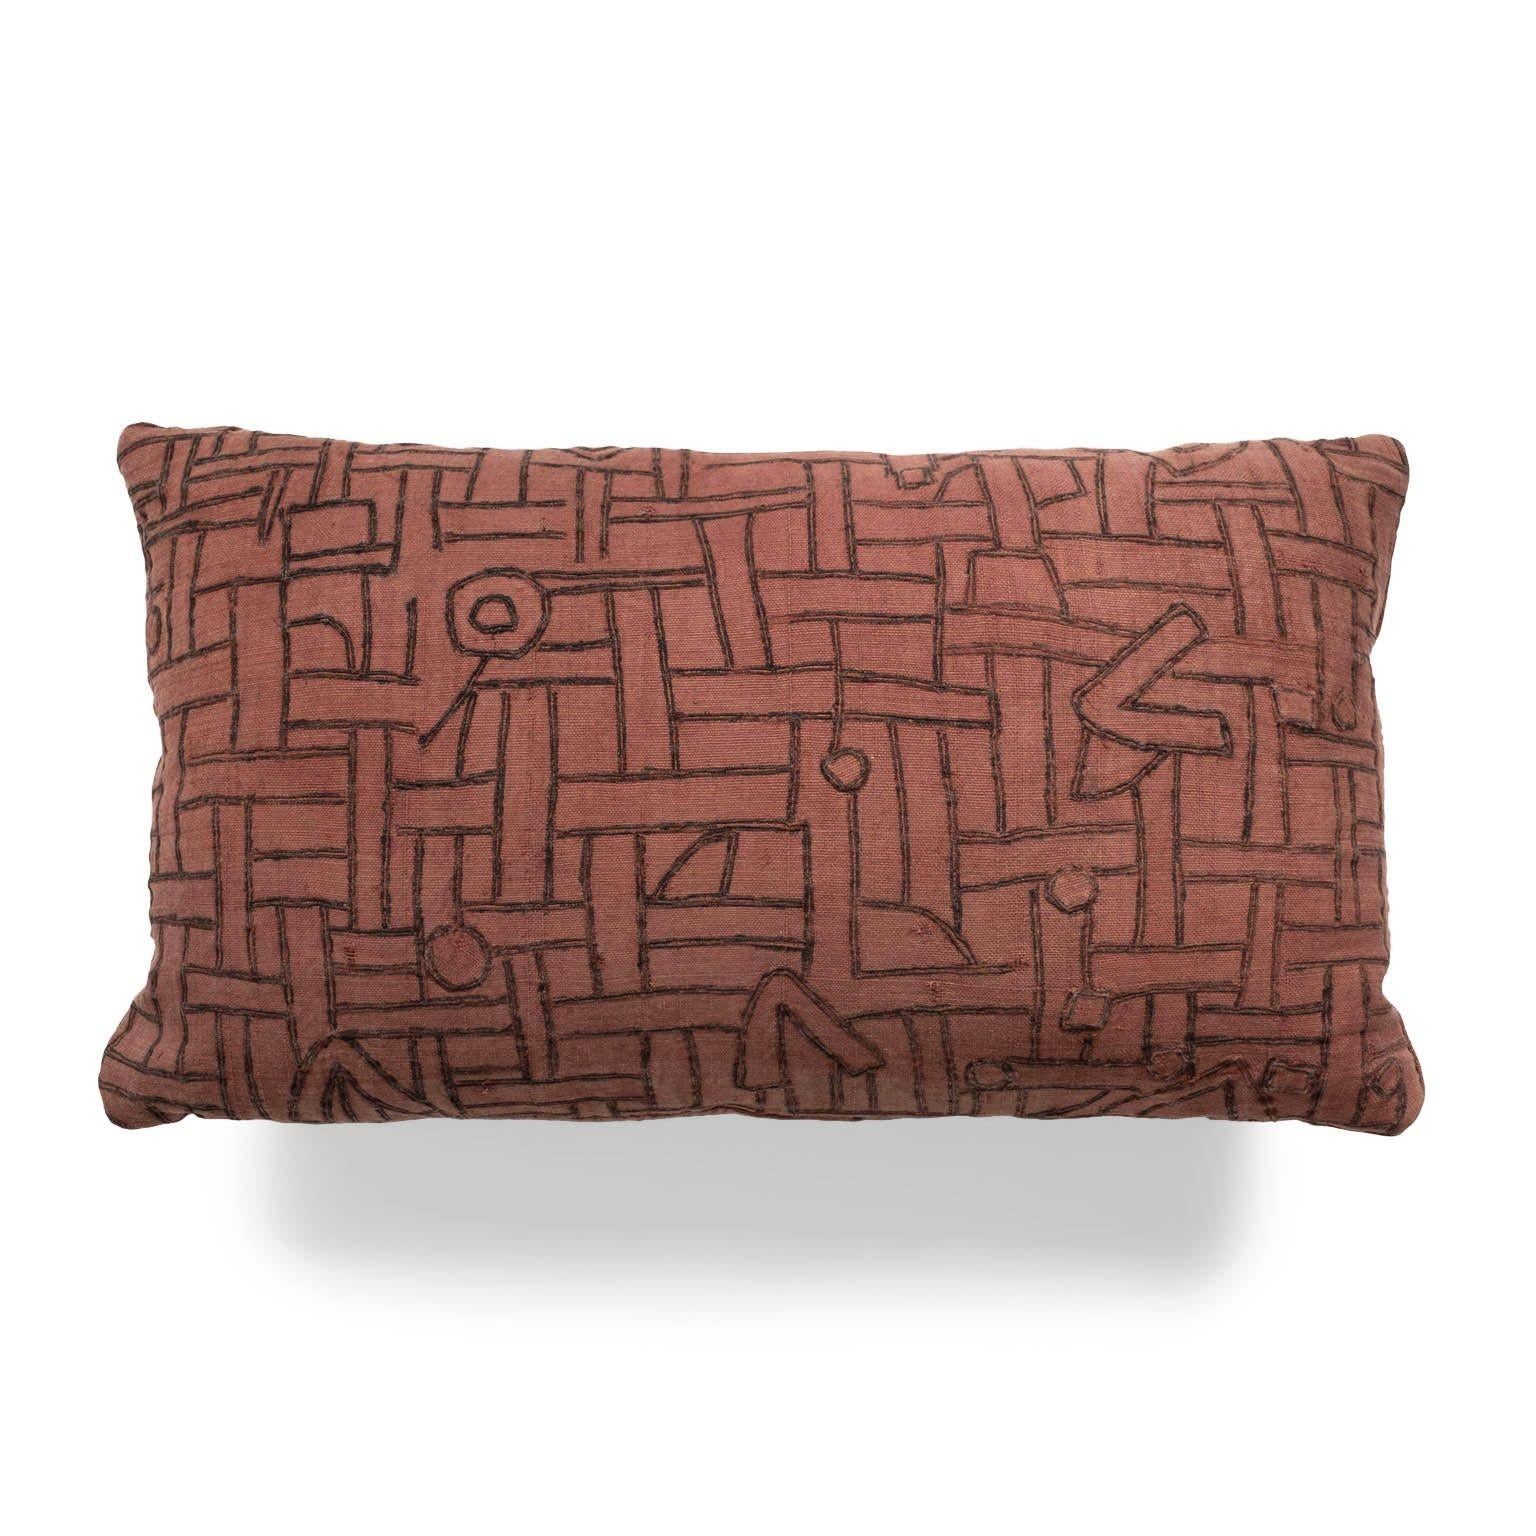 Coussin lombaire brodé de couleur prune délavée, fabriqué à partir d'un ancien textile tribal en coton tissé et teint à la main (vers 1930-1954). Cousu à la main, il constitue un magnifique oreiller à dos libre, avec fermeture éclair et garniture en